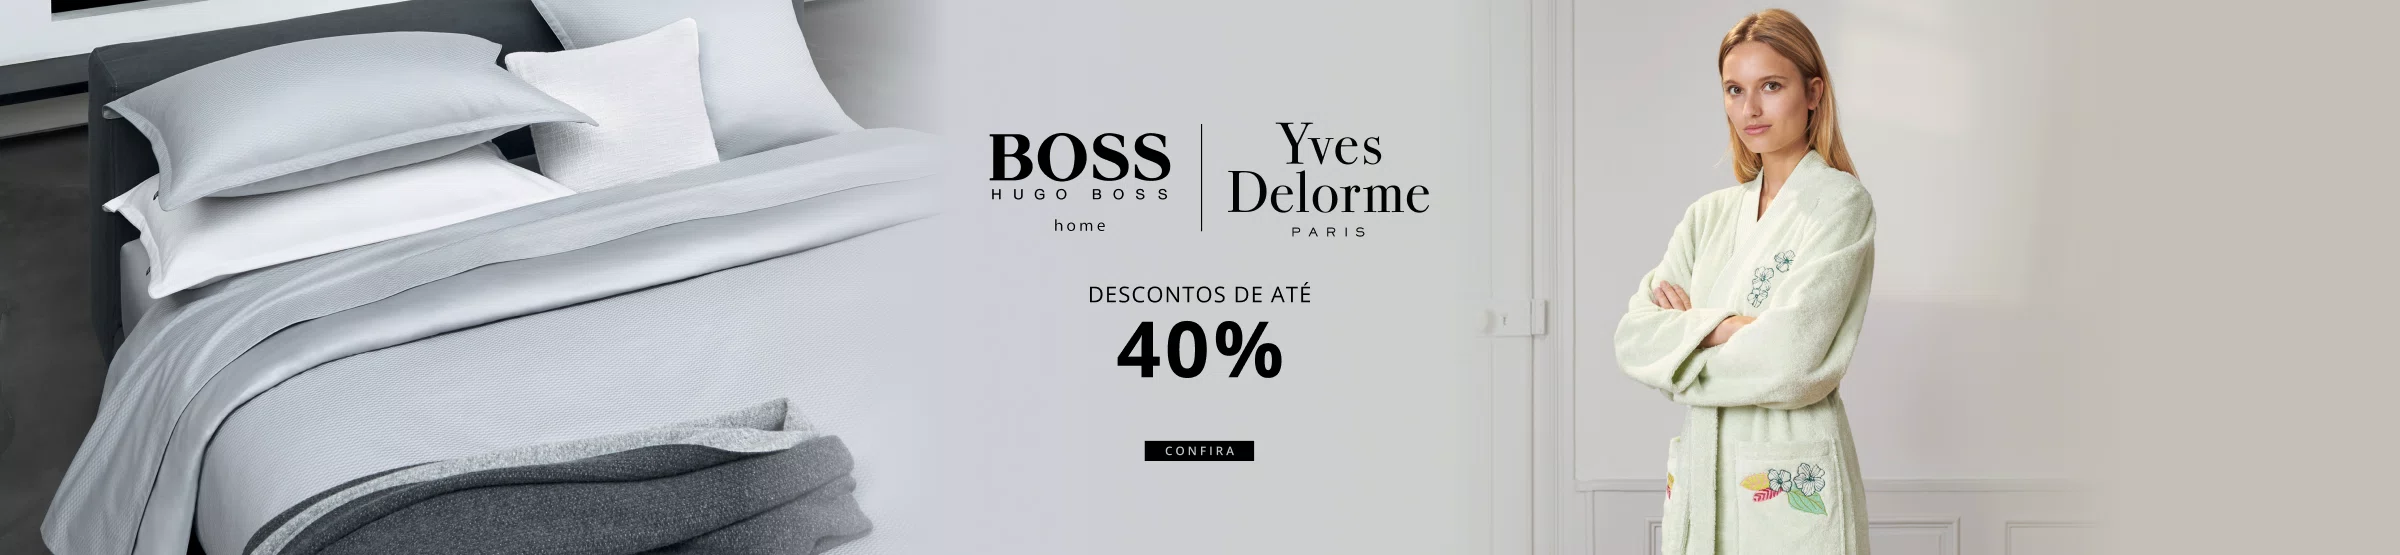 Yves Delorme e Hugo Boss Outlet até 40%off